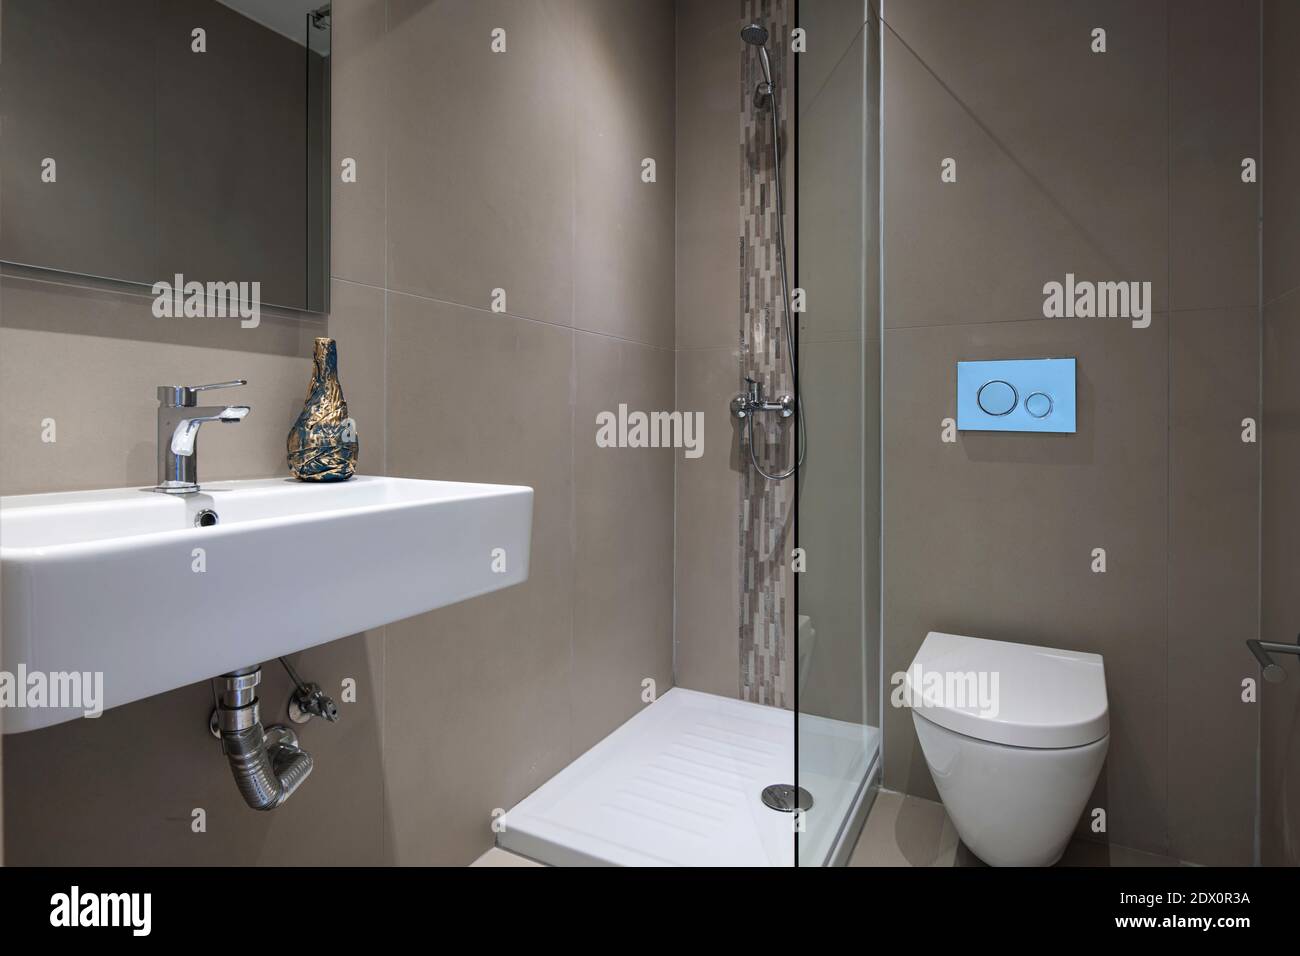 Intérieur gris moderne de la petite salle de bains avec douche en verre, miroir rectangulaire, toilettes montées, lavabo blanc suspendu Banque D'Images